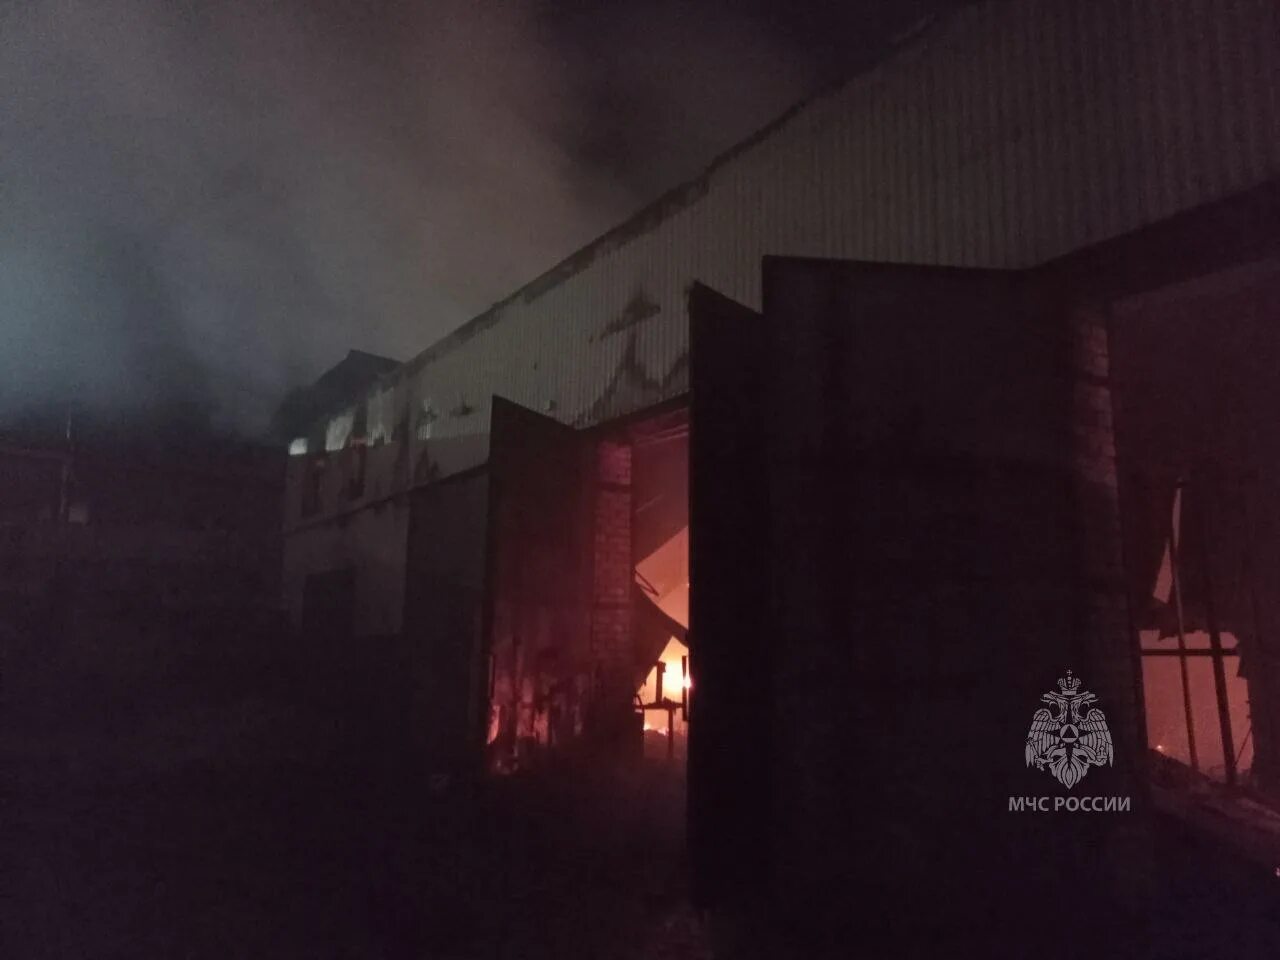 Пожар в здании. Возгорание электропроводки. Пожар в Нижнем Новгороде сегодня. Пожарные тушат пожар.